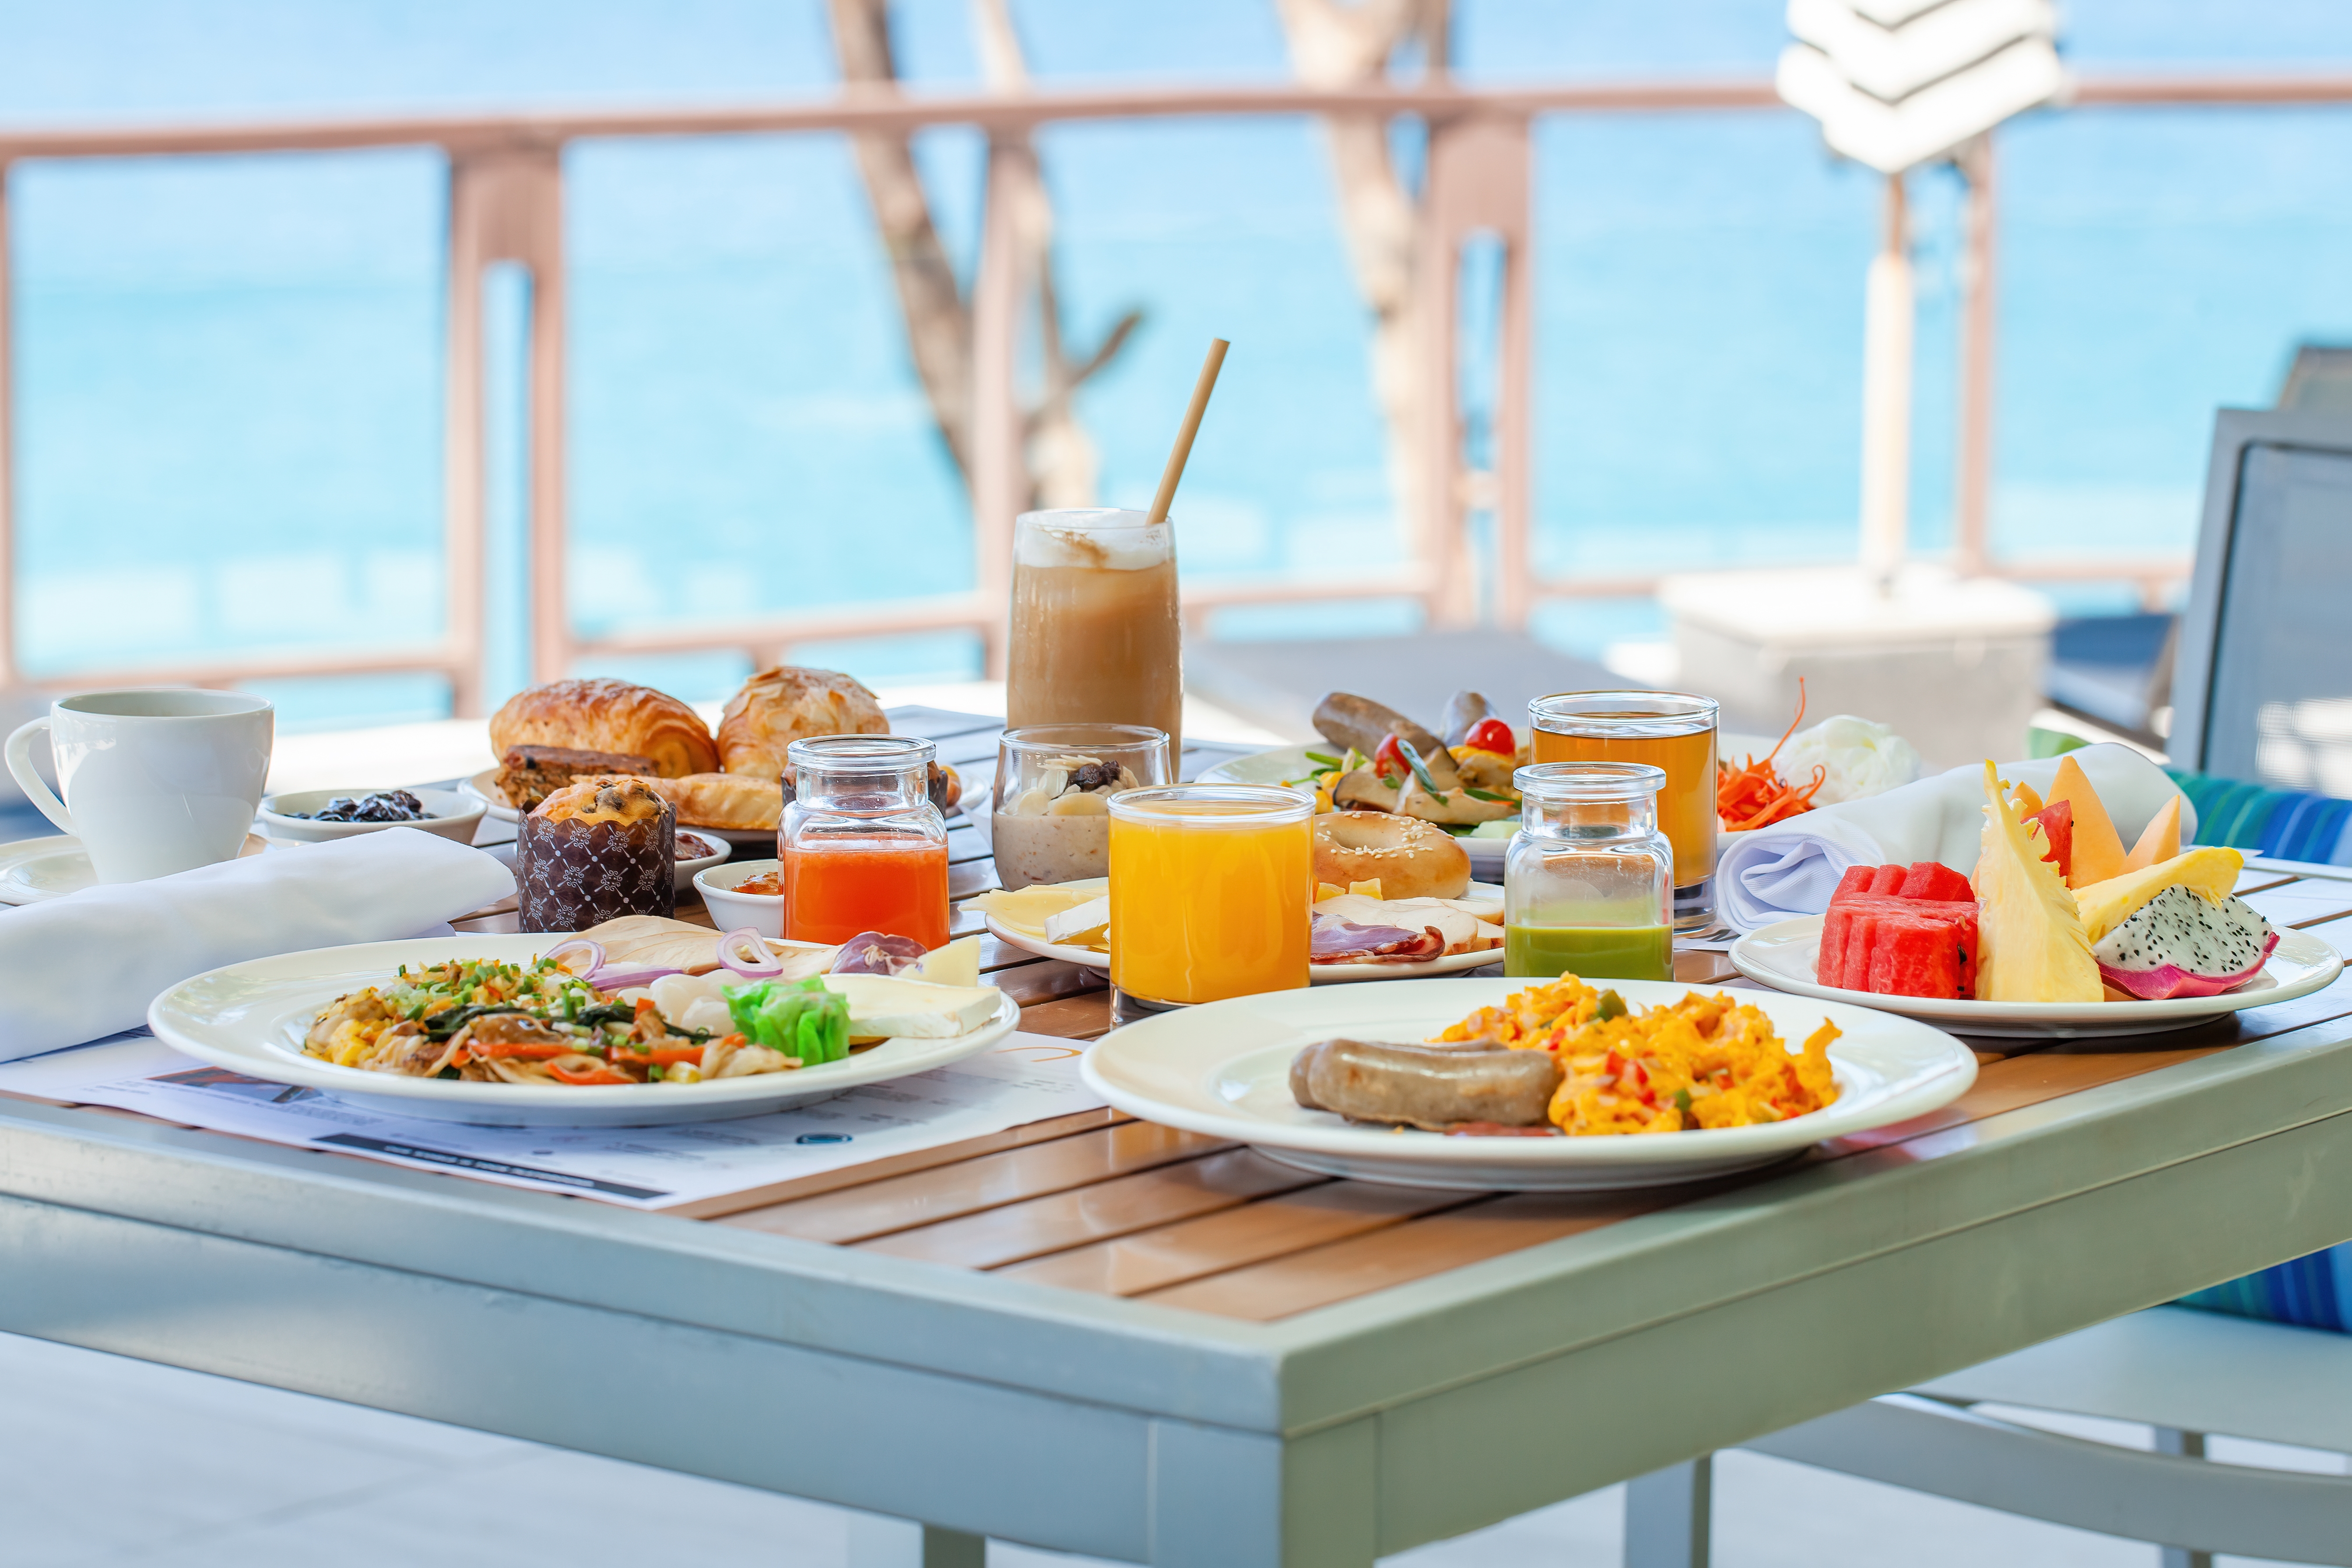 Desayuno junto al agua | Foto: Shutterstock